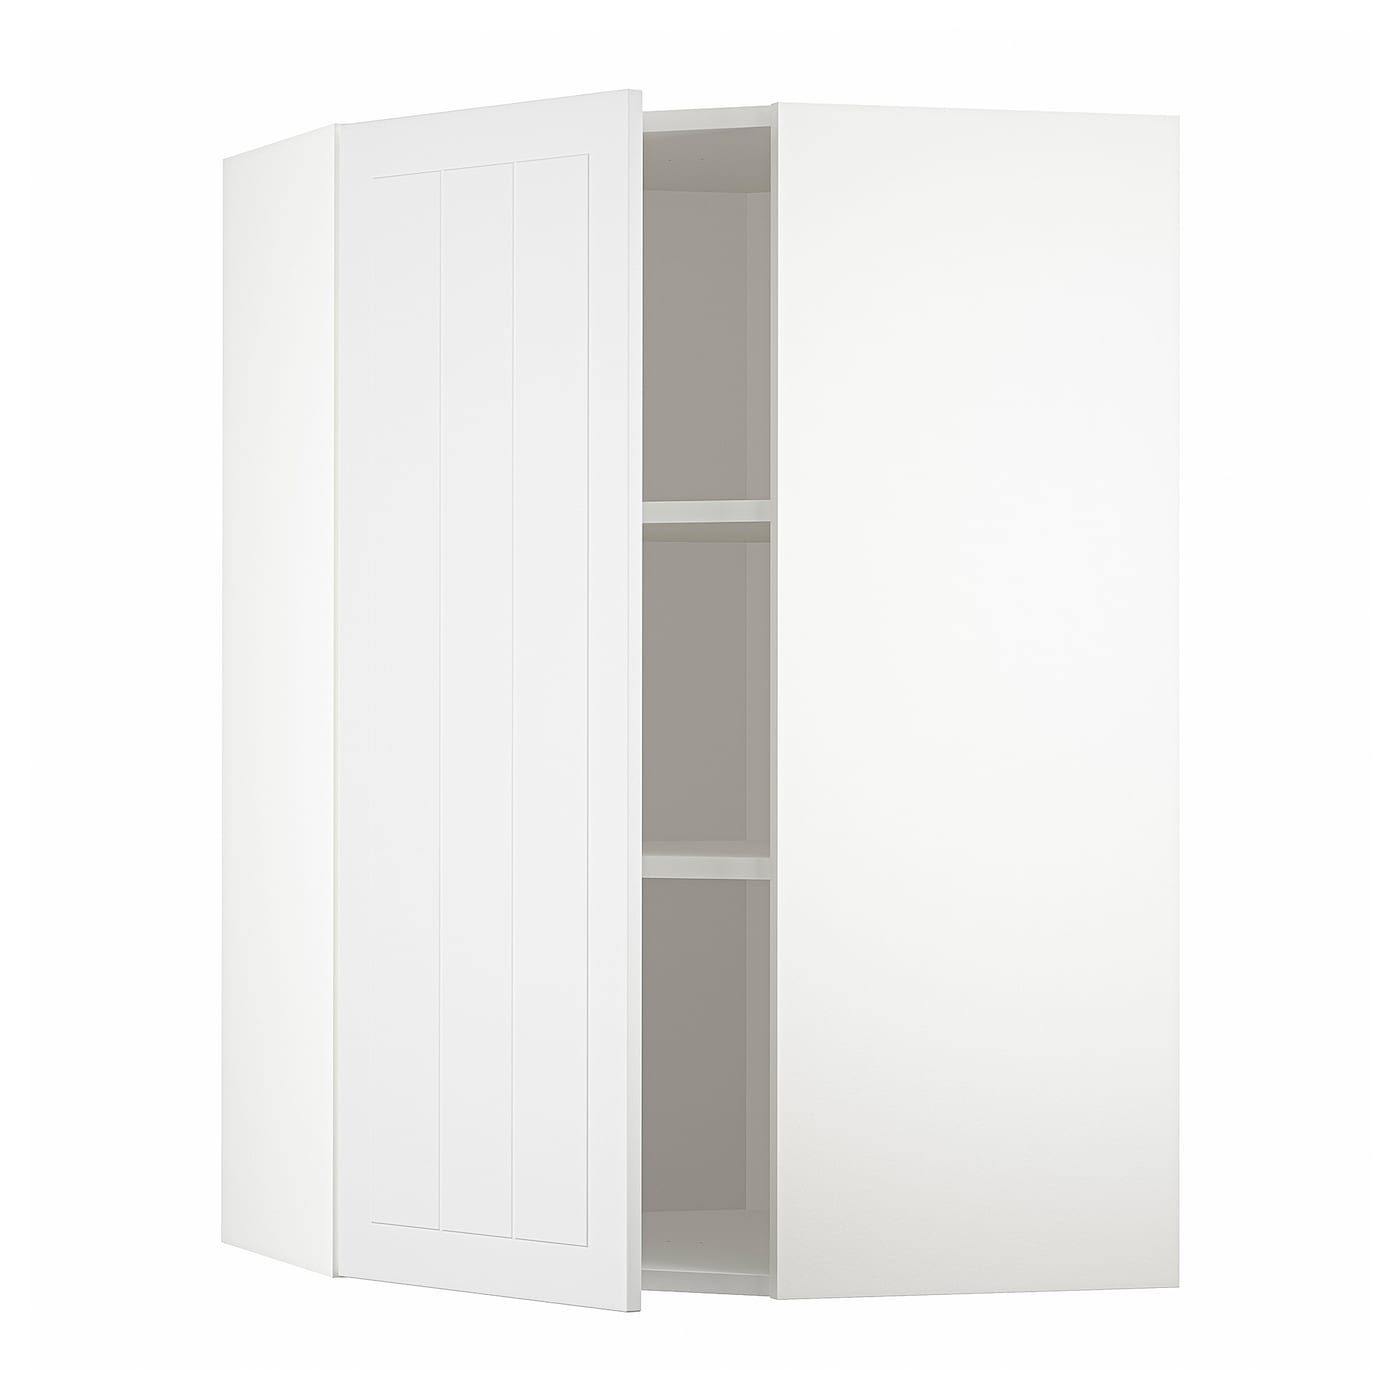 Угловой навесной шкаф с полками - METOD  IKEA/  МЕТОД ИКЕА, 100х68 см, белый